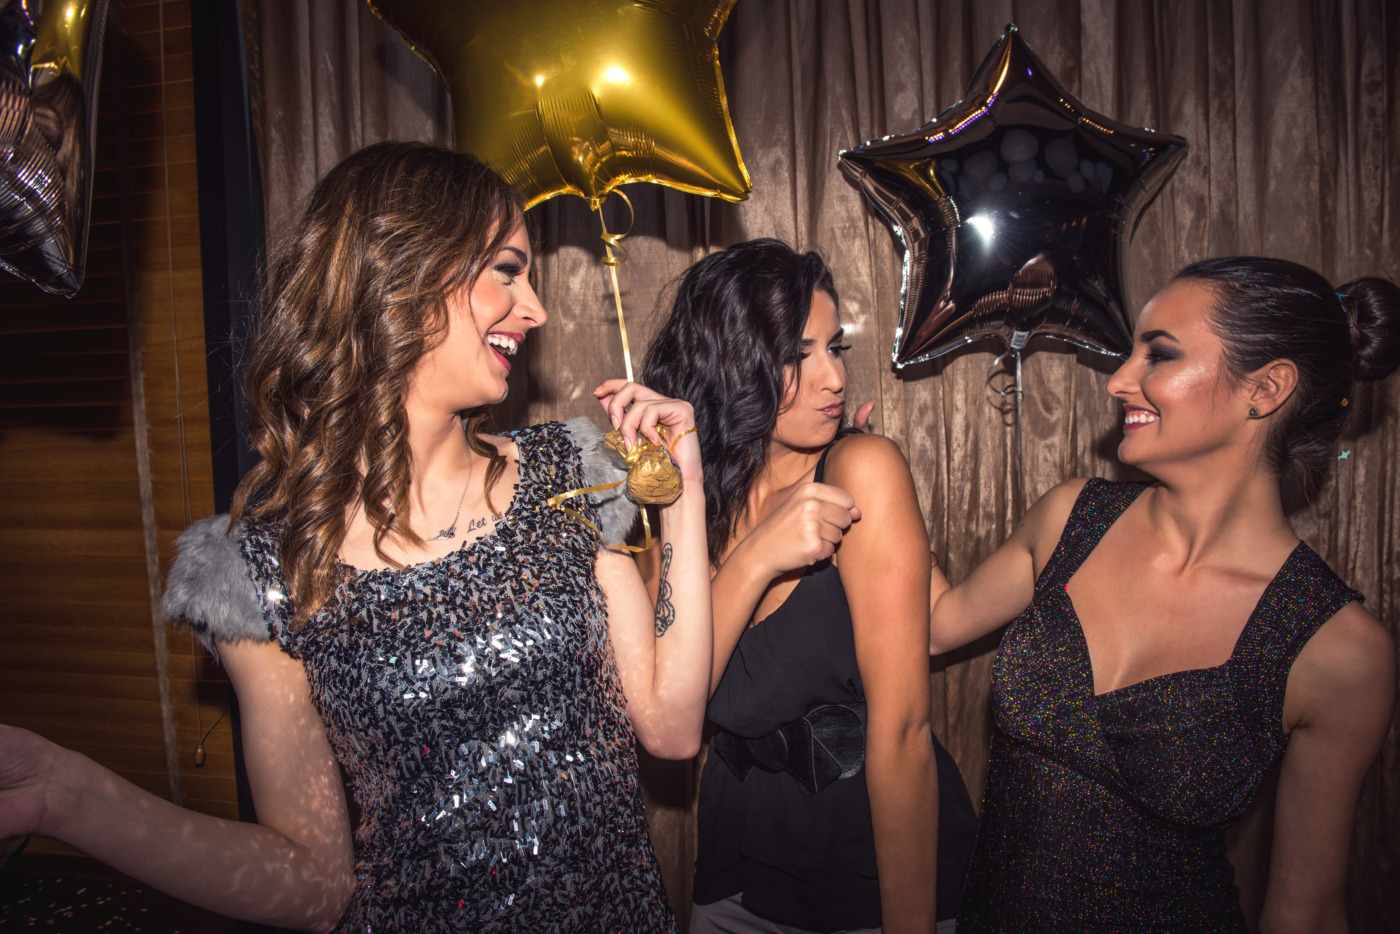 Three teenage girls partying in a club.